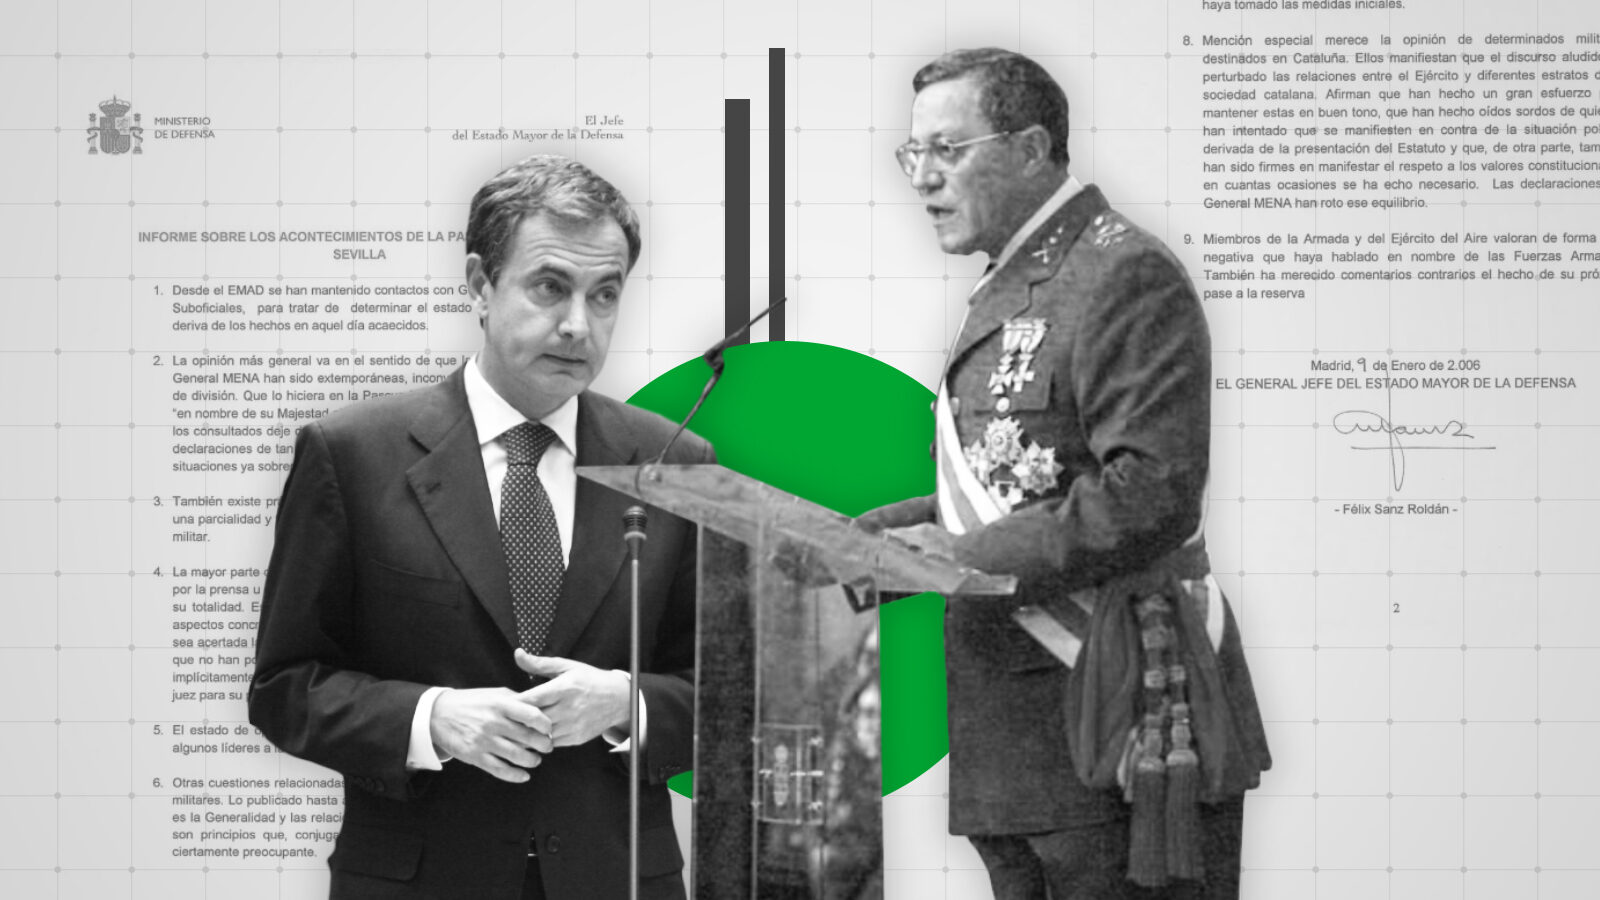 Las declaraciones del general Mena tuvieron lugar cuando Zapatero negociaba el Estatuto de Cataluña, lo que propició una investigación de Sanz Roldán